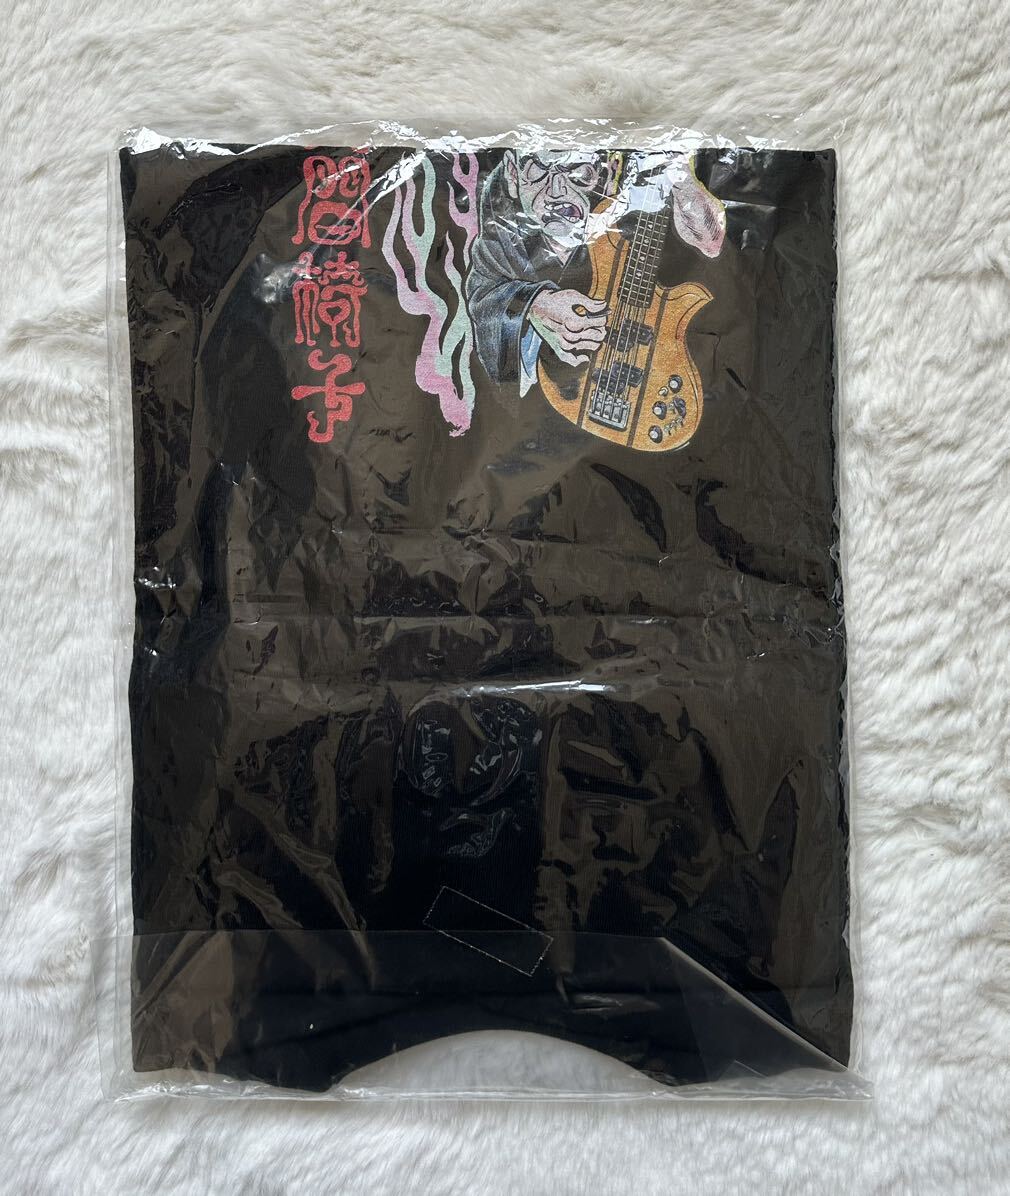  Ningen-Isu футболка история с привидениями retro иллюстрации L размер нераспечатанный товар 